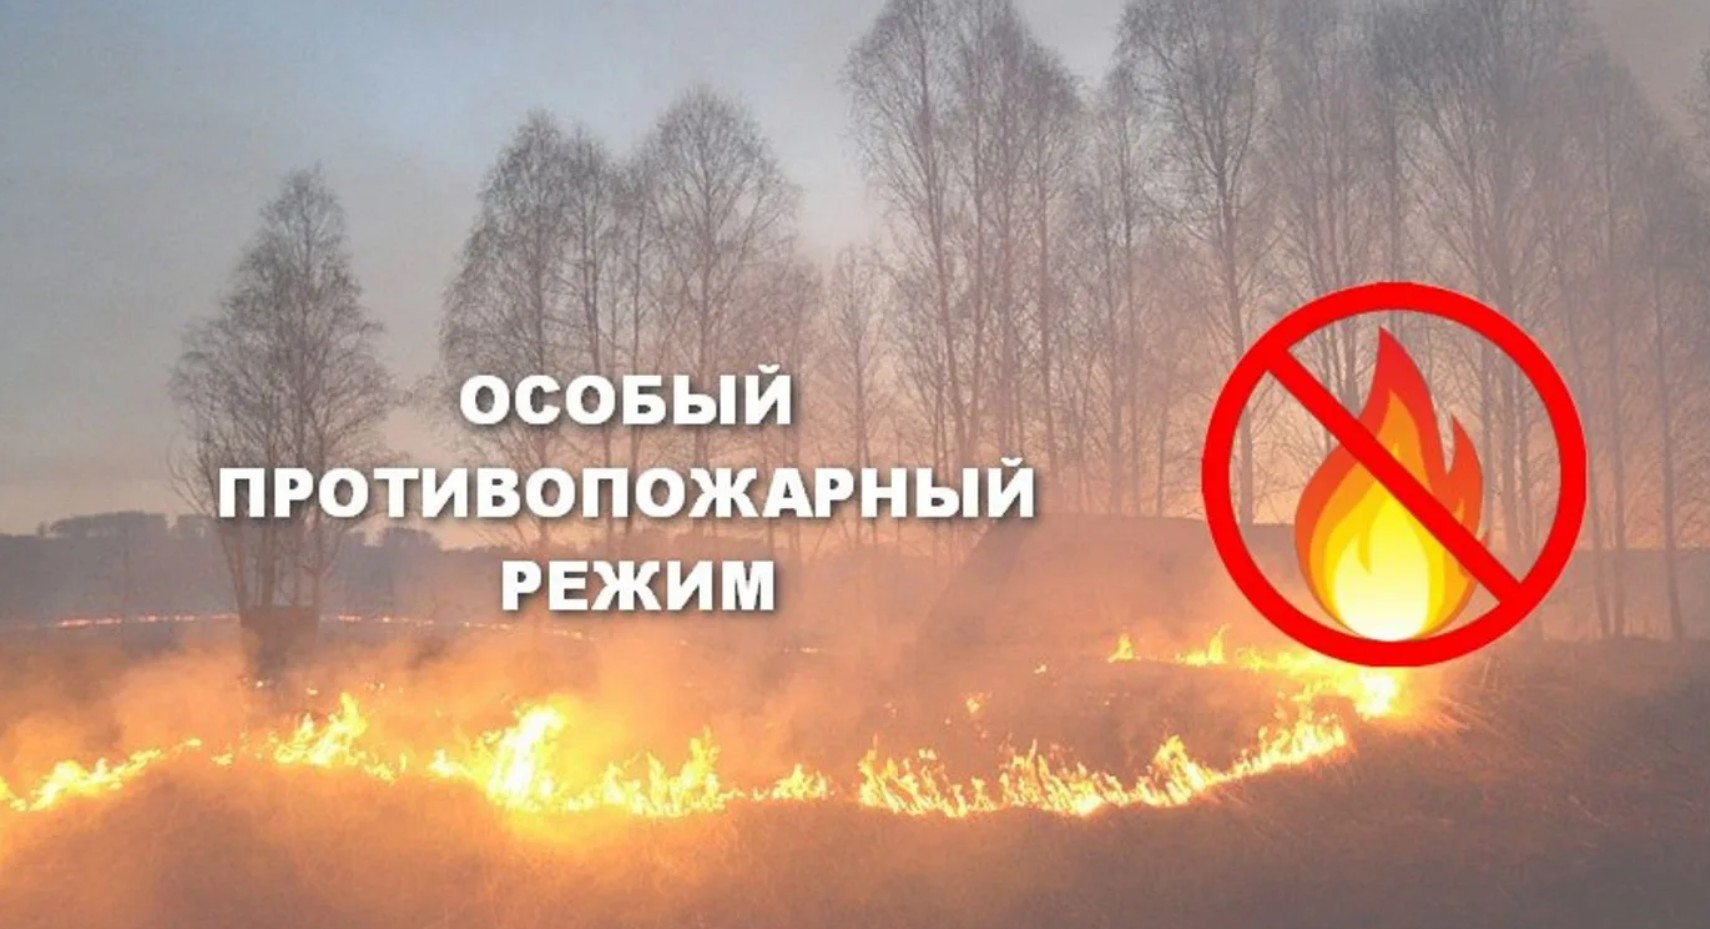 Особый противопожарный режим в Волховском районе